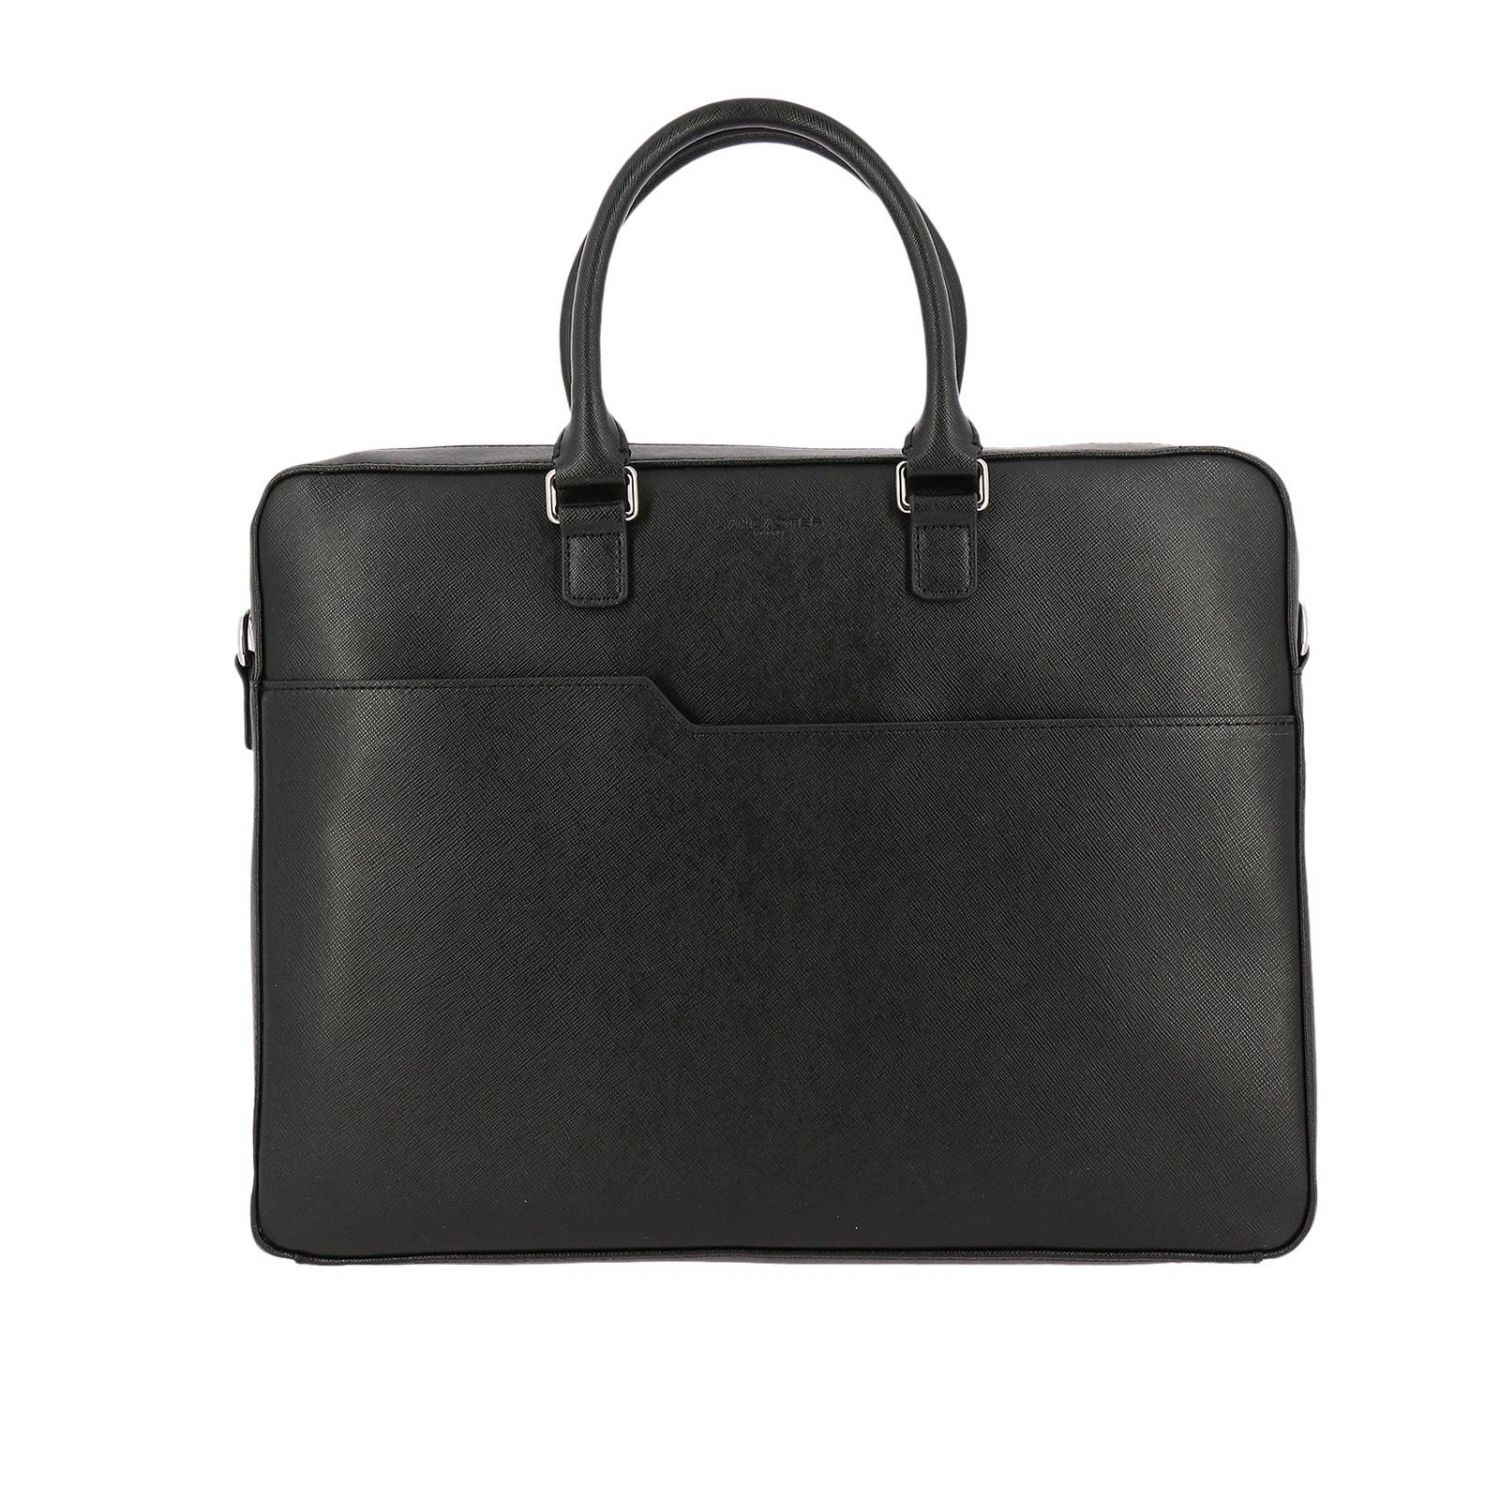 Lancaster Paris Outlet: Shoulder bag women - Black | Handbag Lancaster ...